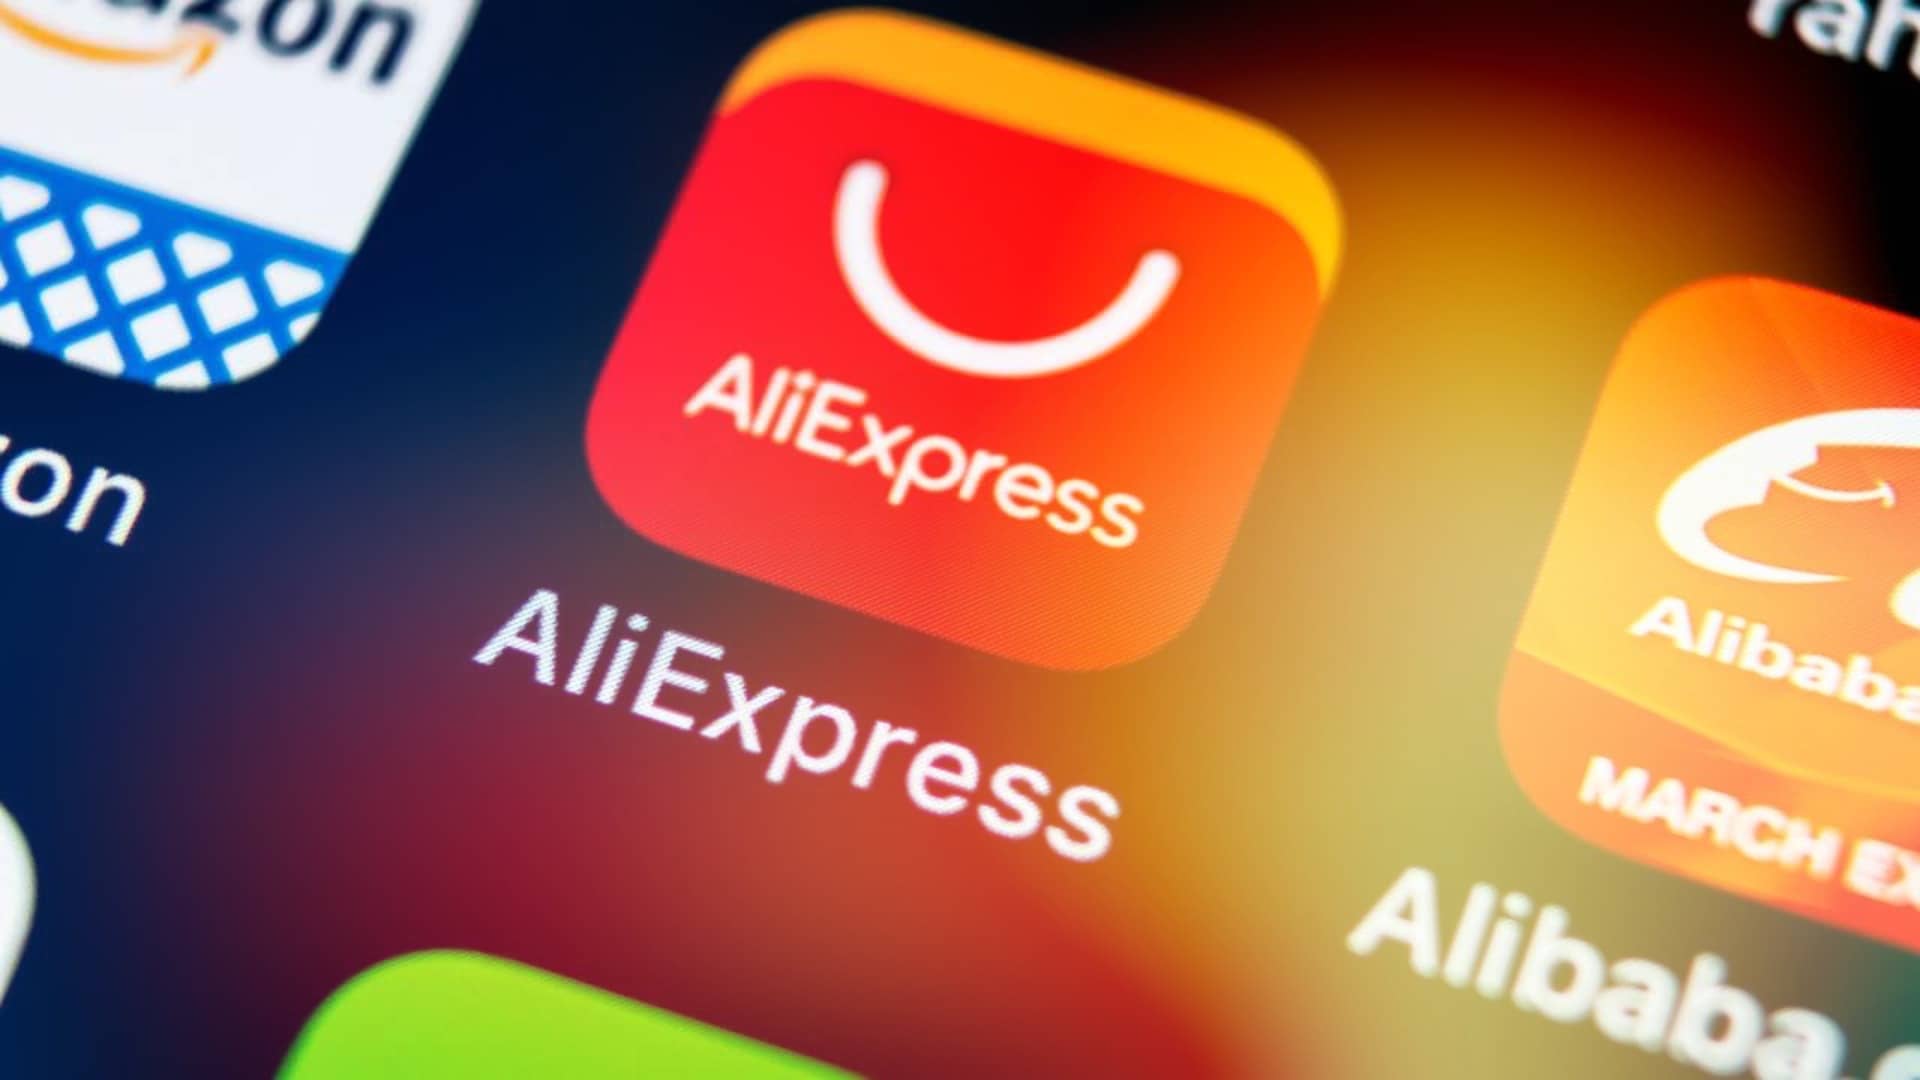 AliExpress Hesap Silme İşlemi Nasıl Yapılır?